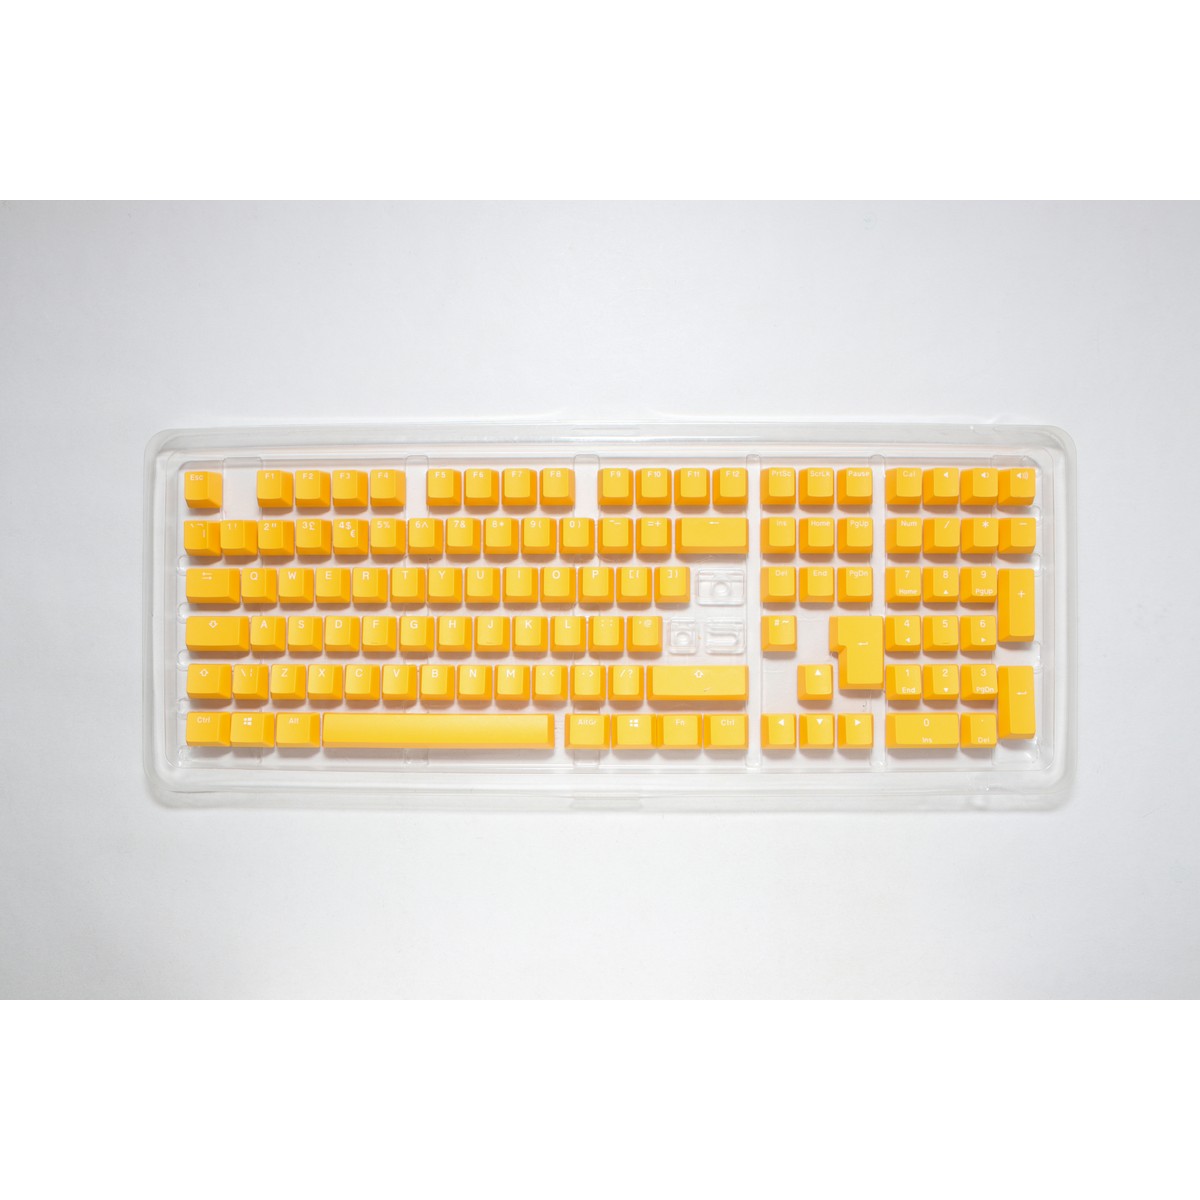 Ducky - Ducky Yellow PBT Seamless Double Shot UK Keycap Set (DKSA109-UKPDYDYYWO1)